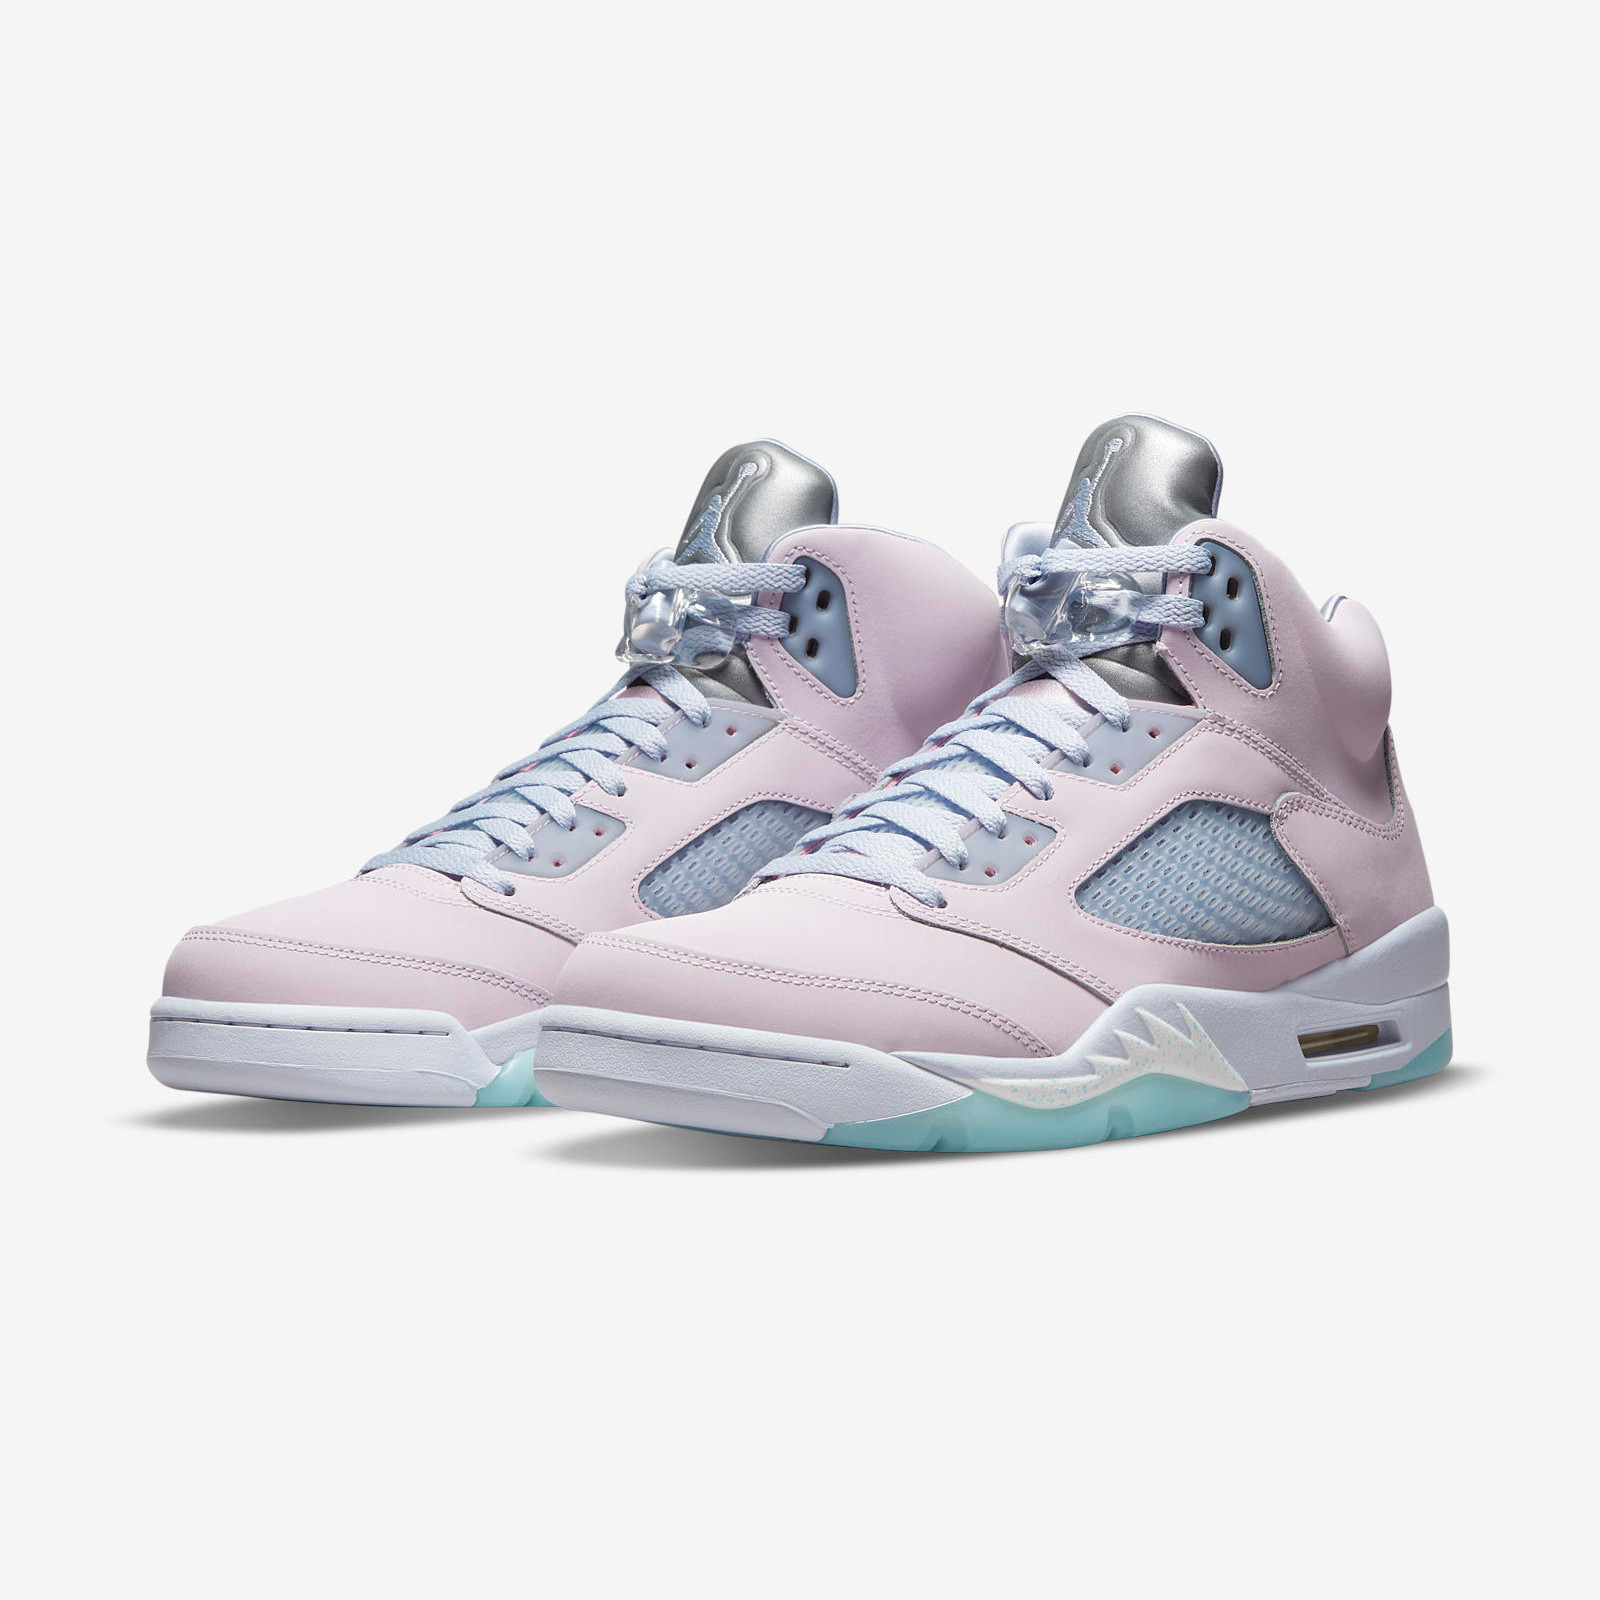 Air Jordan 5 Retro
« Regal Pink »